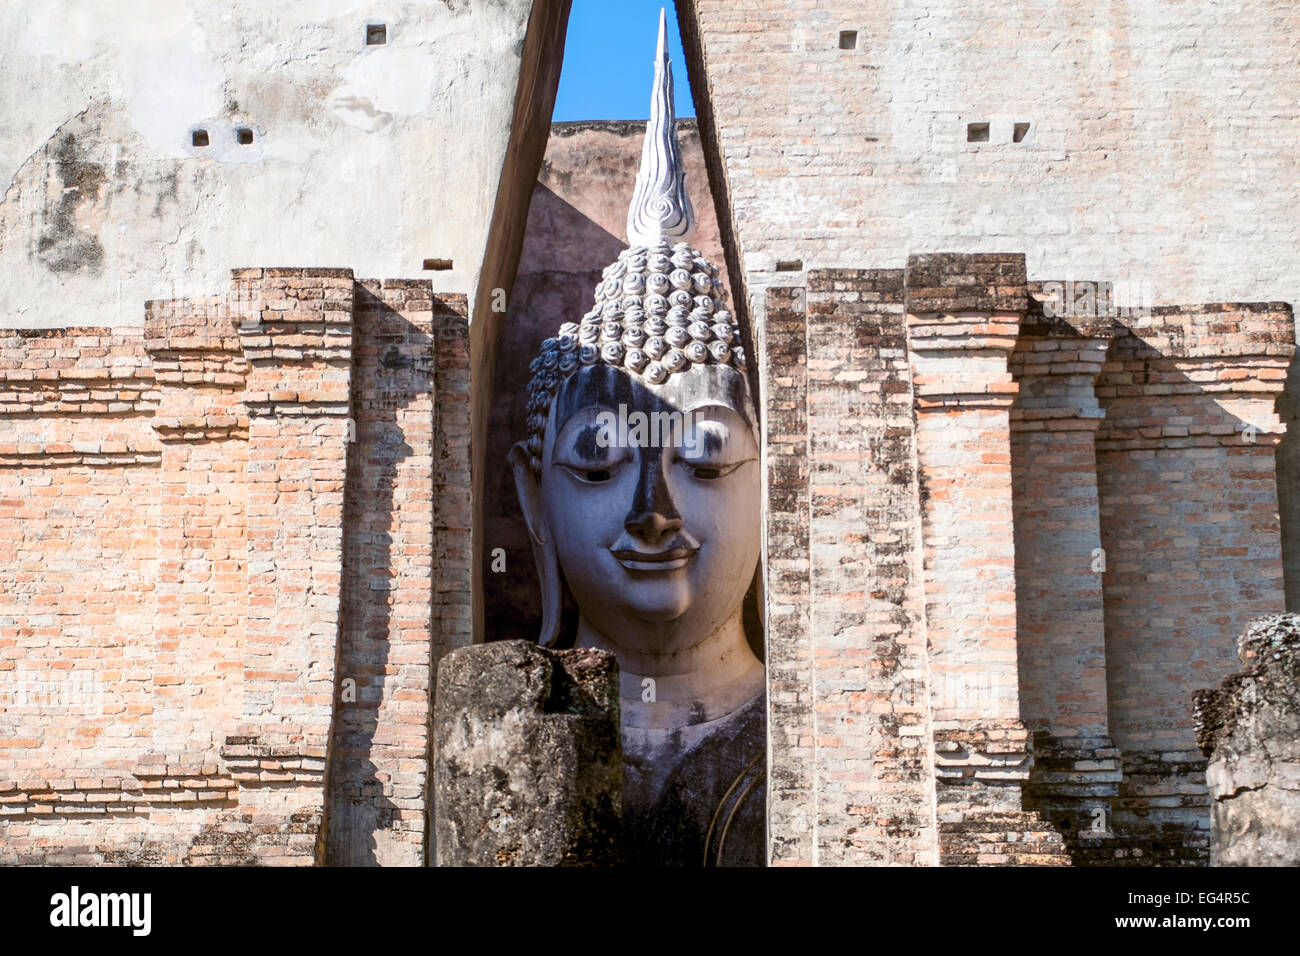 L'Asie. La Thaïlande, l'ancienne capitale du Siam. Parc archéologique de Sukhothai, le Wat Si Chum. Tête de statue de Bouddha. Banque D'Images